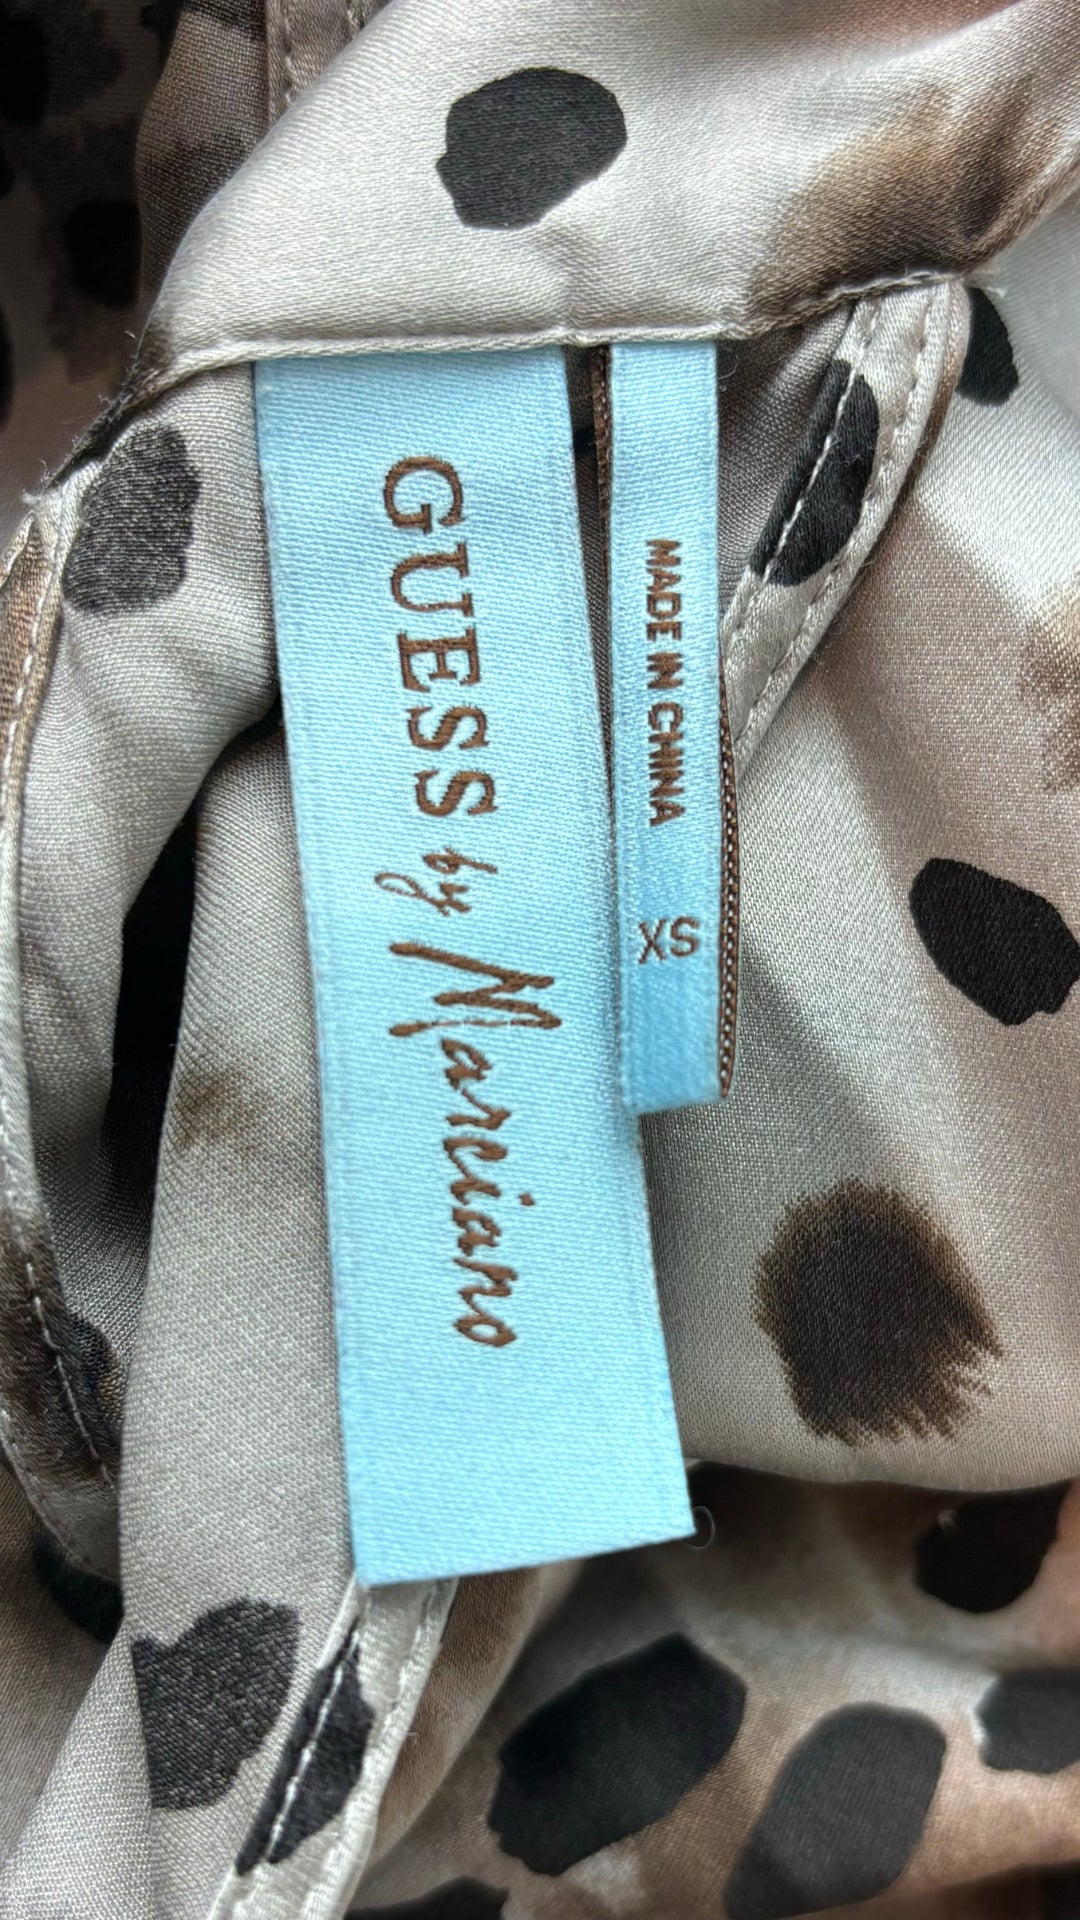 Camisole en soie florale et léopard Guess by Marciano, taille xs. Vue de l'étiquette de marque et taille.